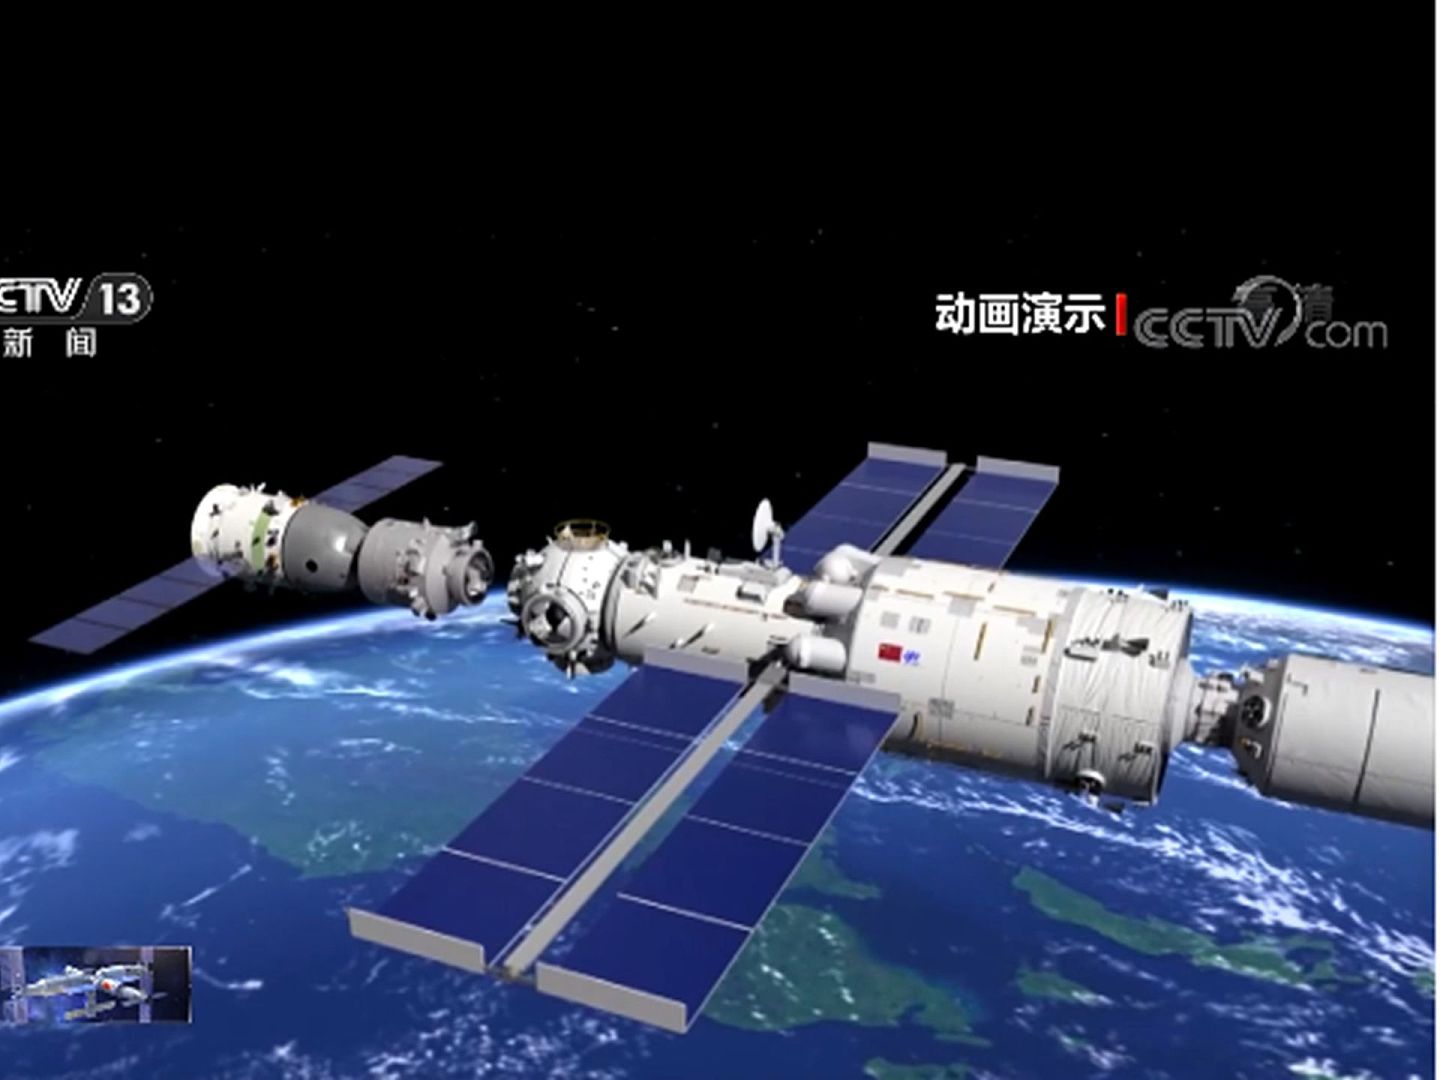 中国神舟十二号载人飞船与天和核心舱动画演示对接画面。（中国央视截图）